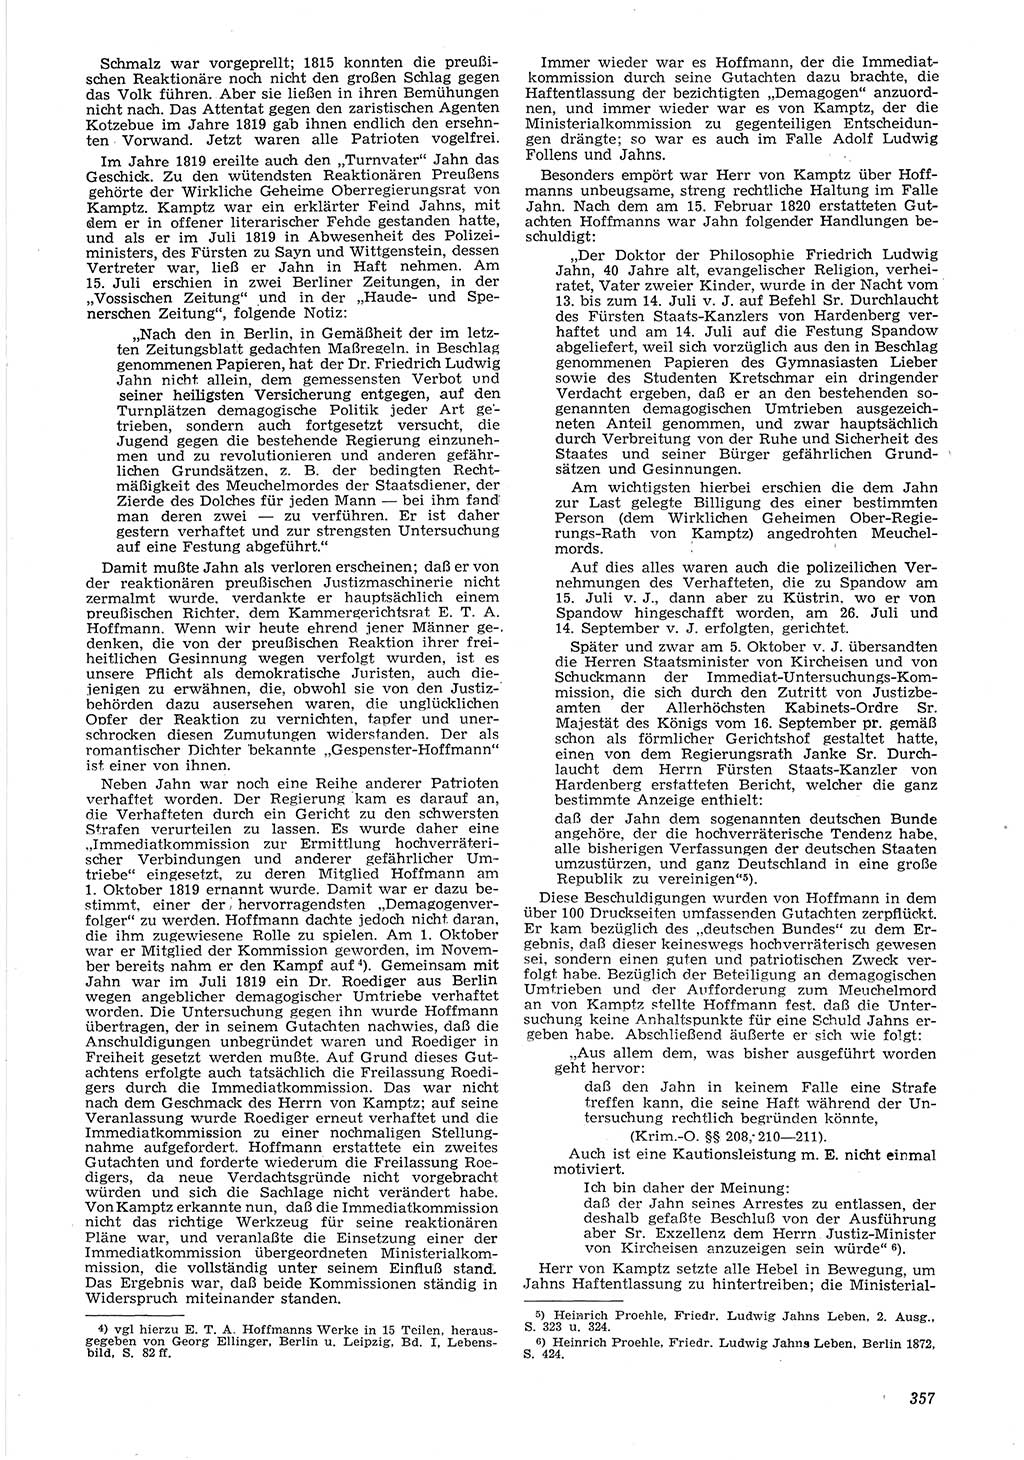 Neue Justiz (NJ), Zeitschrift für Recht und Rechtswissenschaft [Deutsche Demokratische Republik (DDR)], 6. Jahrgang 1952, Seite 357 (NJ DDR 1952, S. 357)